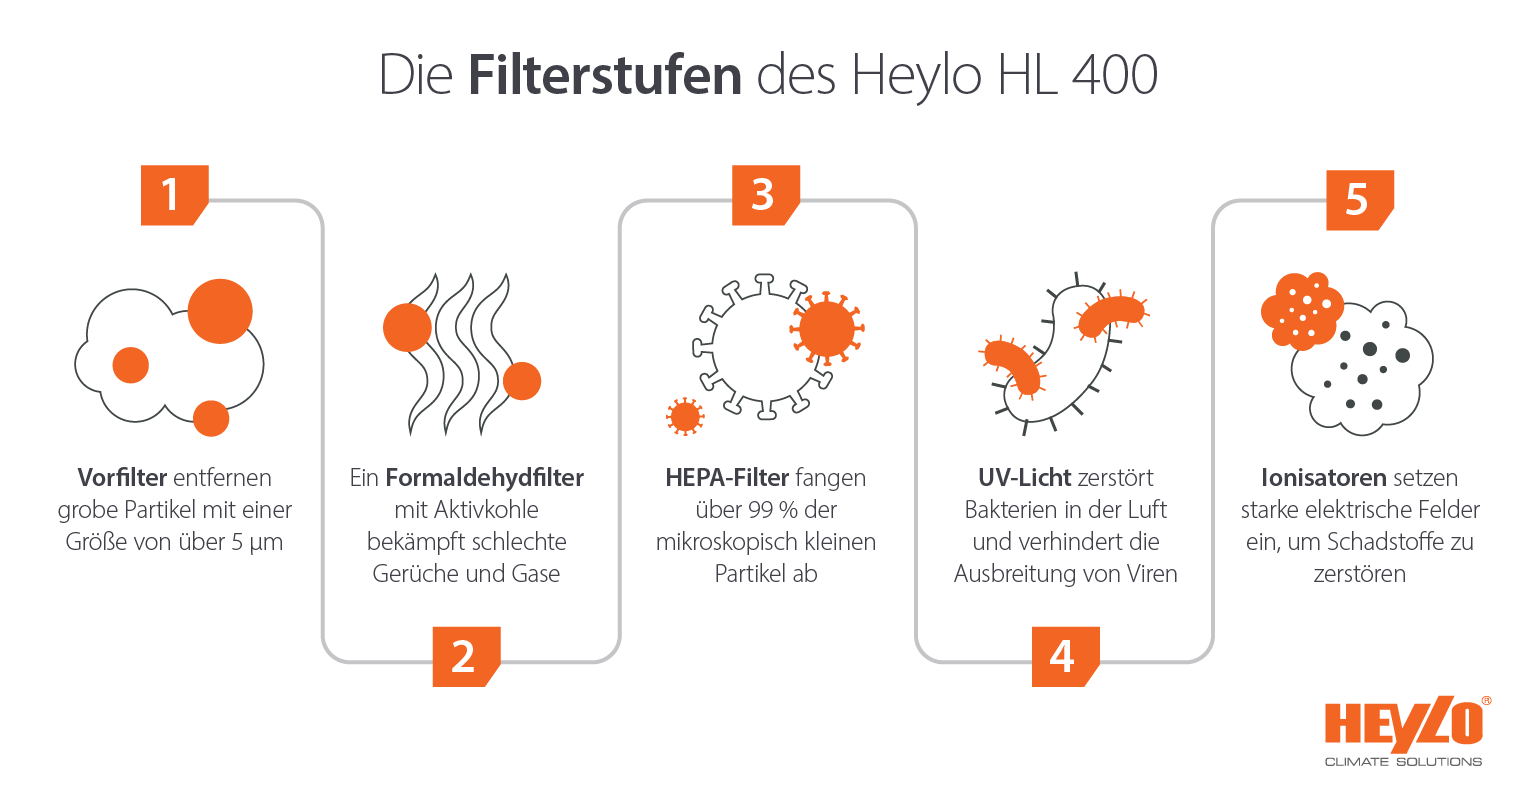 Heylo HL 400 Luftreiniger mit mehreren Filtrationsstufen - Infografik